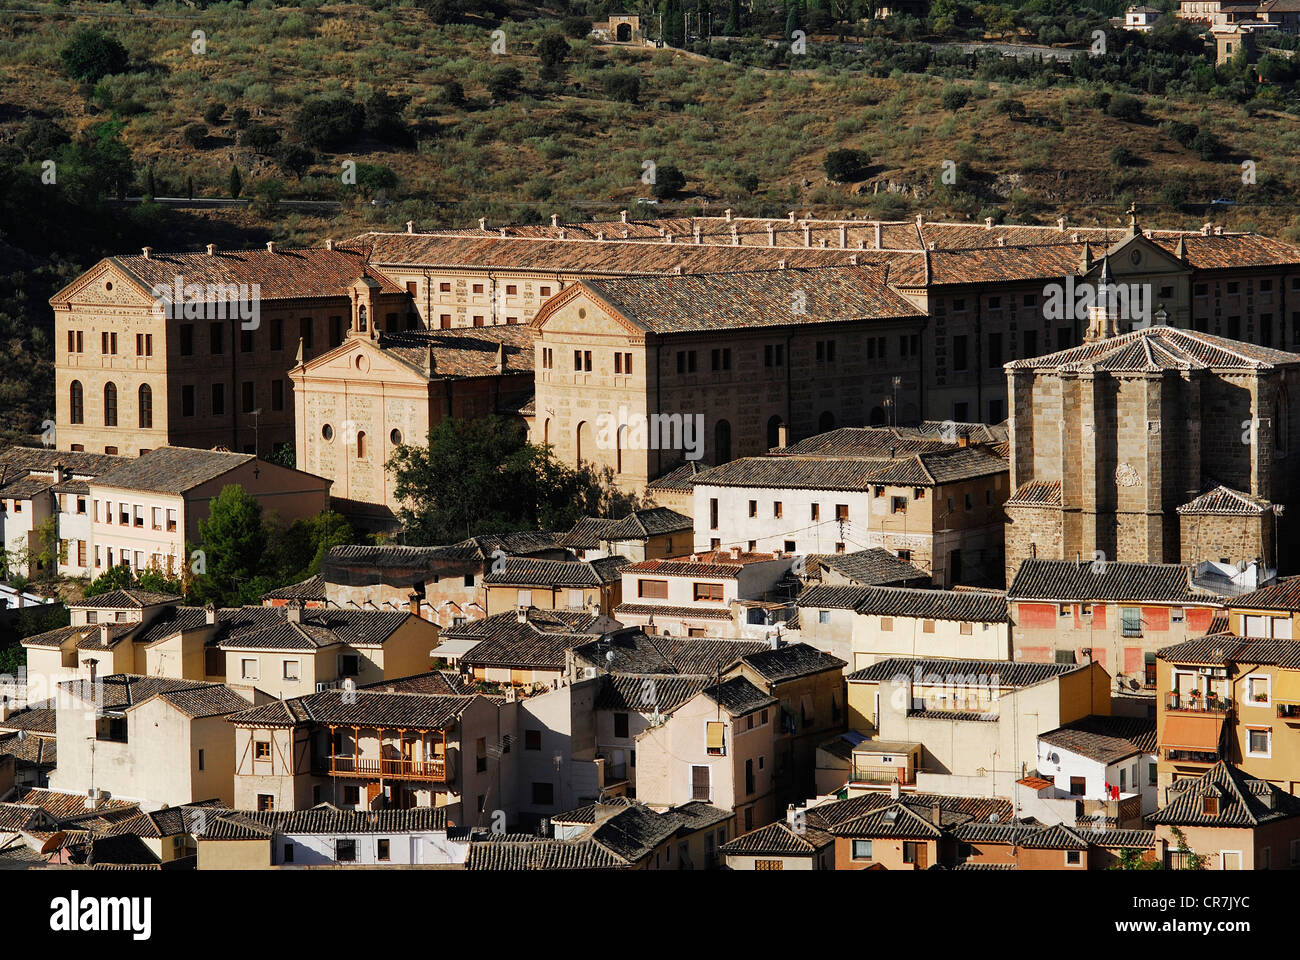 Spagna, Castilla la Mancha, Toledo, storica città patrimonio mondiale dell'UNESCO, il Seminario Mayor, seminario costruito nel 1830, e la Foto Stock